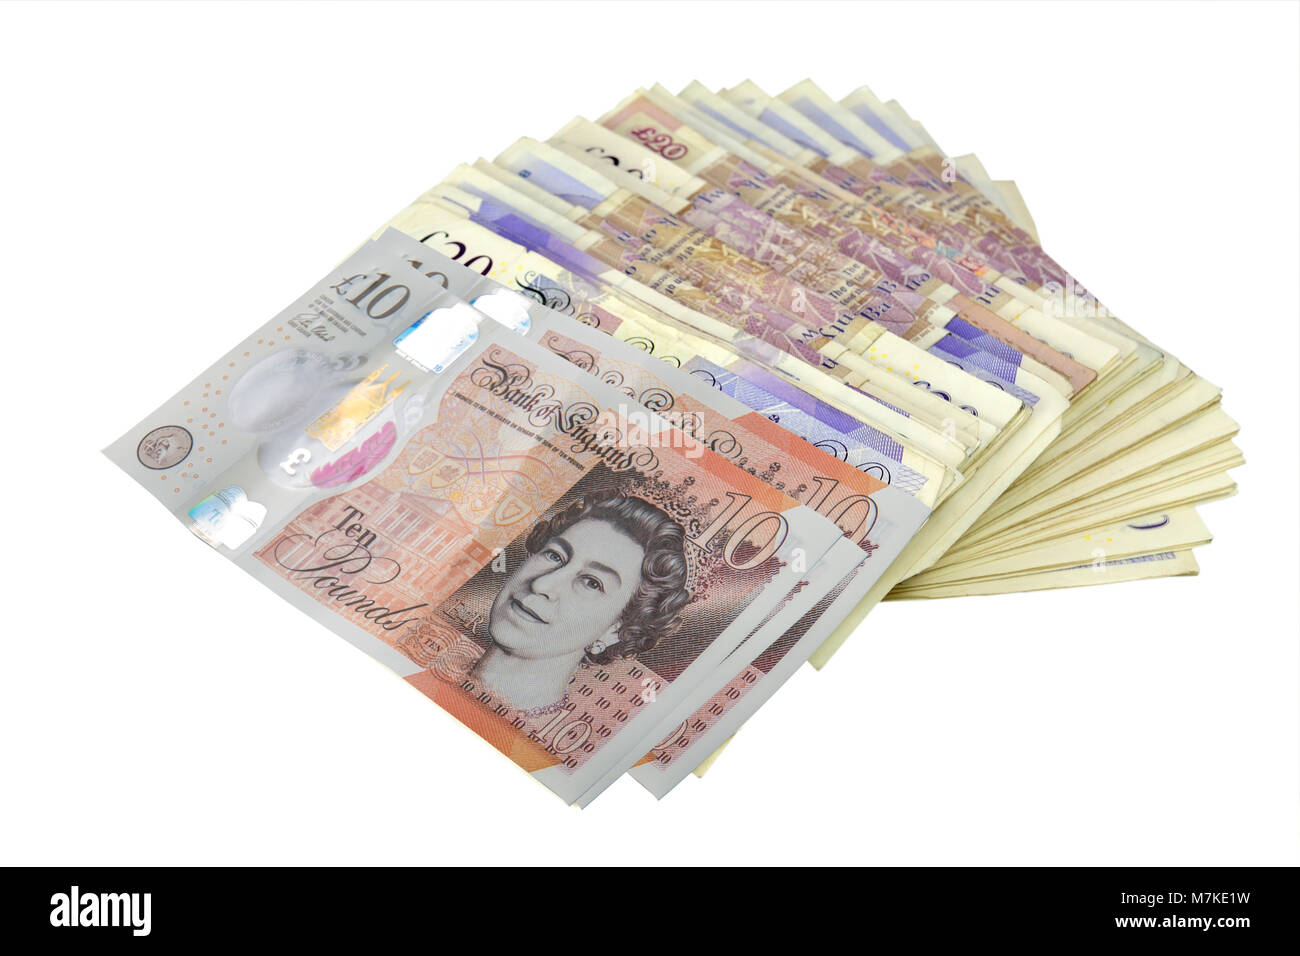 Pile de billets de banque britannique sur fond blanc Banque D'Images